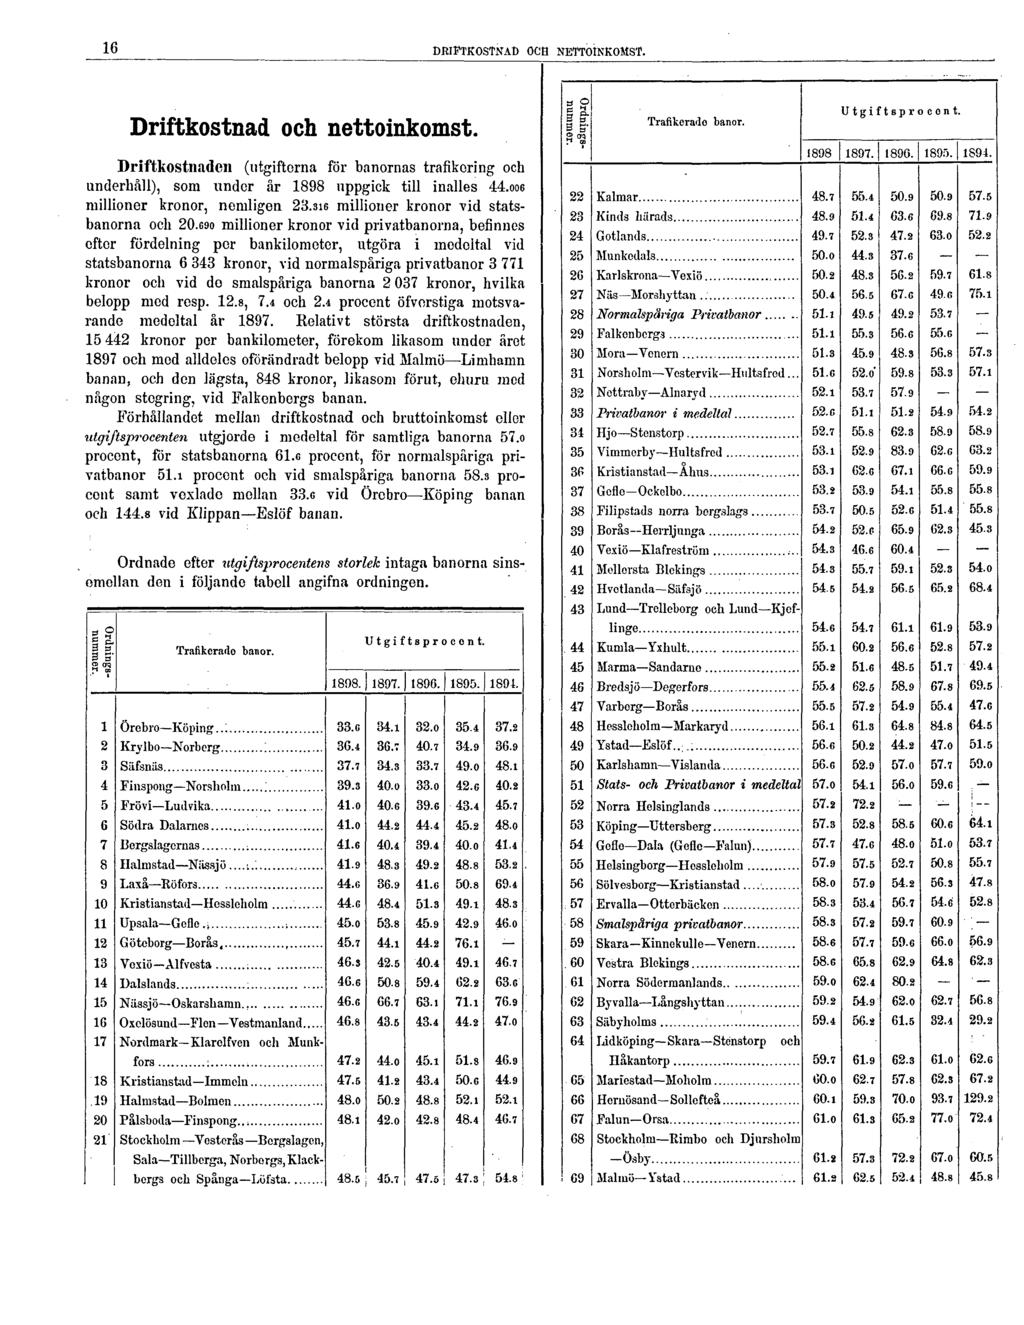 16 DRIFTKOSTNAD OCH NETTOINKOMST. Driftkostnad och nettoinkomst. Driftkostnaden (utgifterna för banornas trafikoring och underhall), som under är 1898 uppgick till inalles 44.